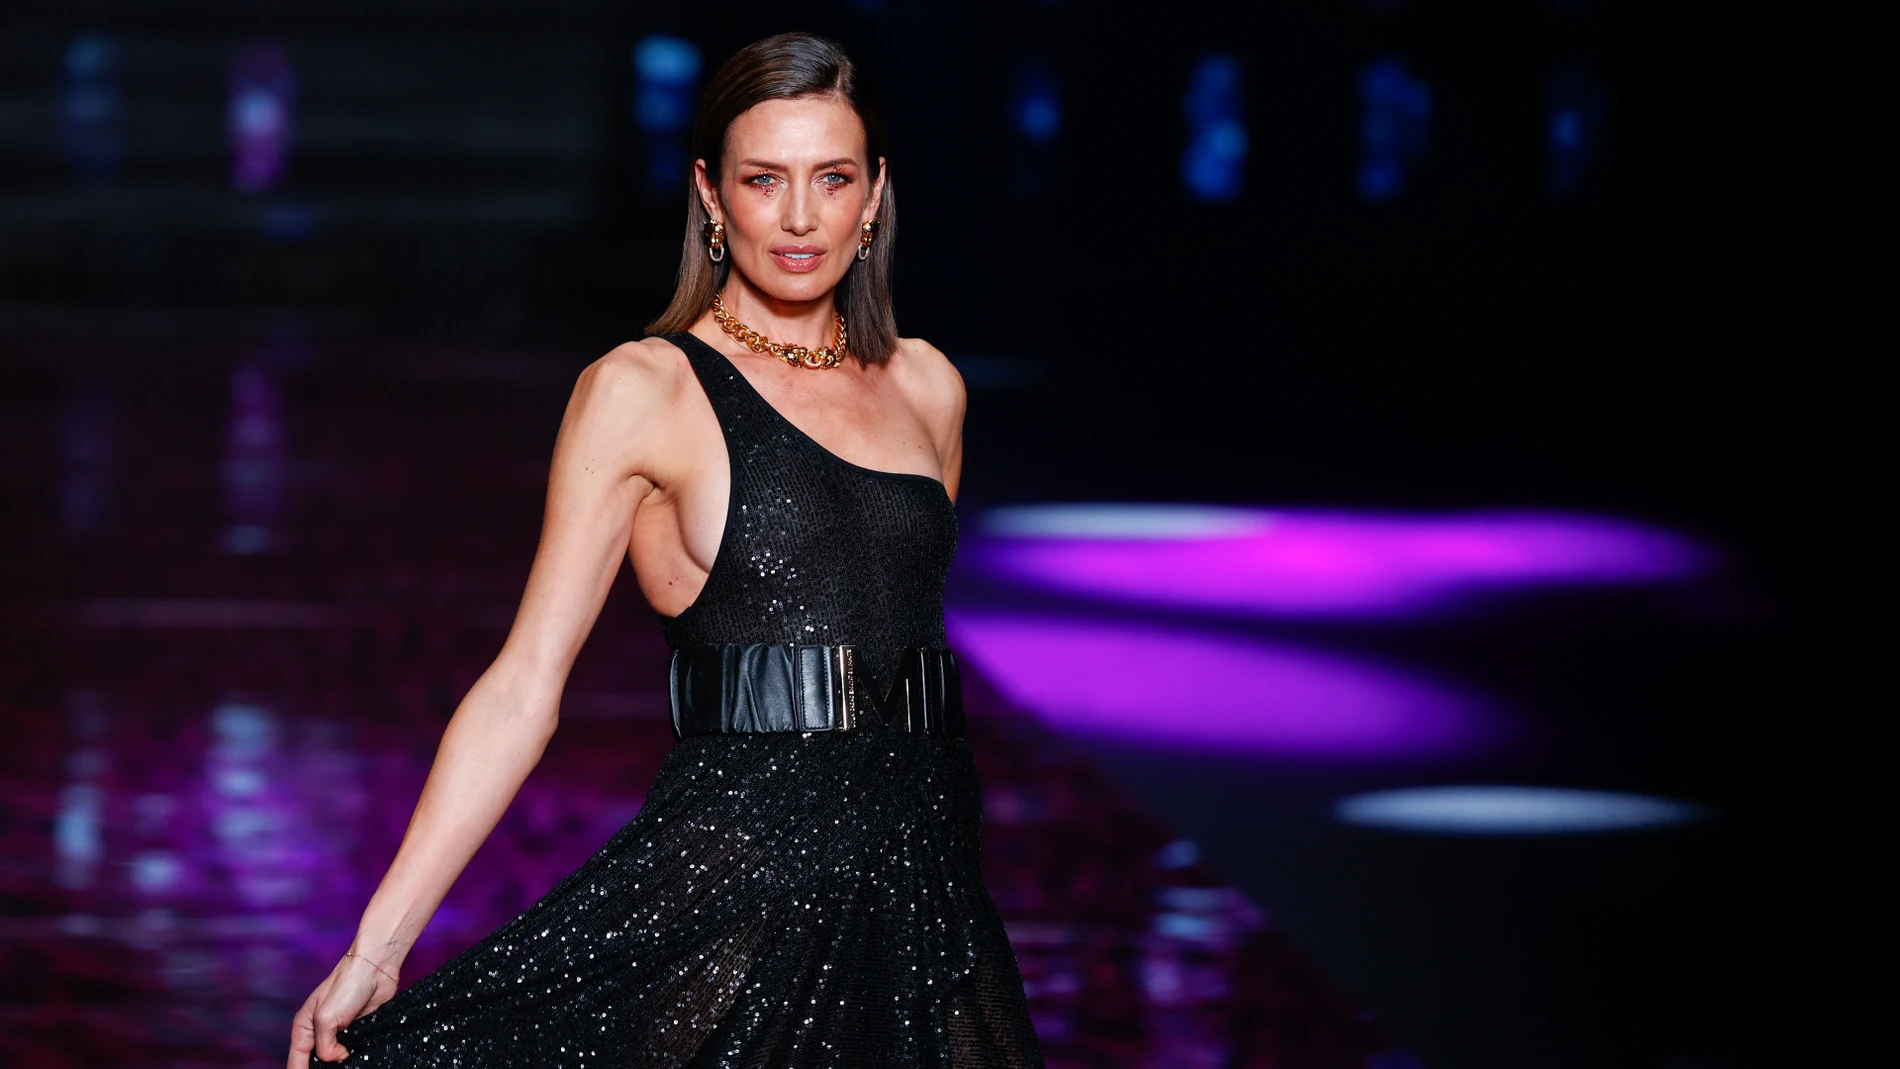 La modelo Nieves Alvarez luce una creación de "Lola Casademunt" en la pasarela de la colección durante la Pasarela Cibeles Mercedes-Benz Fashion Week Madrid 2022 en Madrid, el sábado 11 de marzo de 2022.